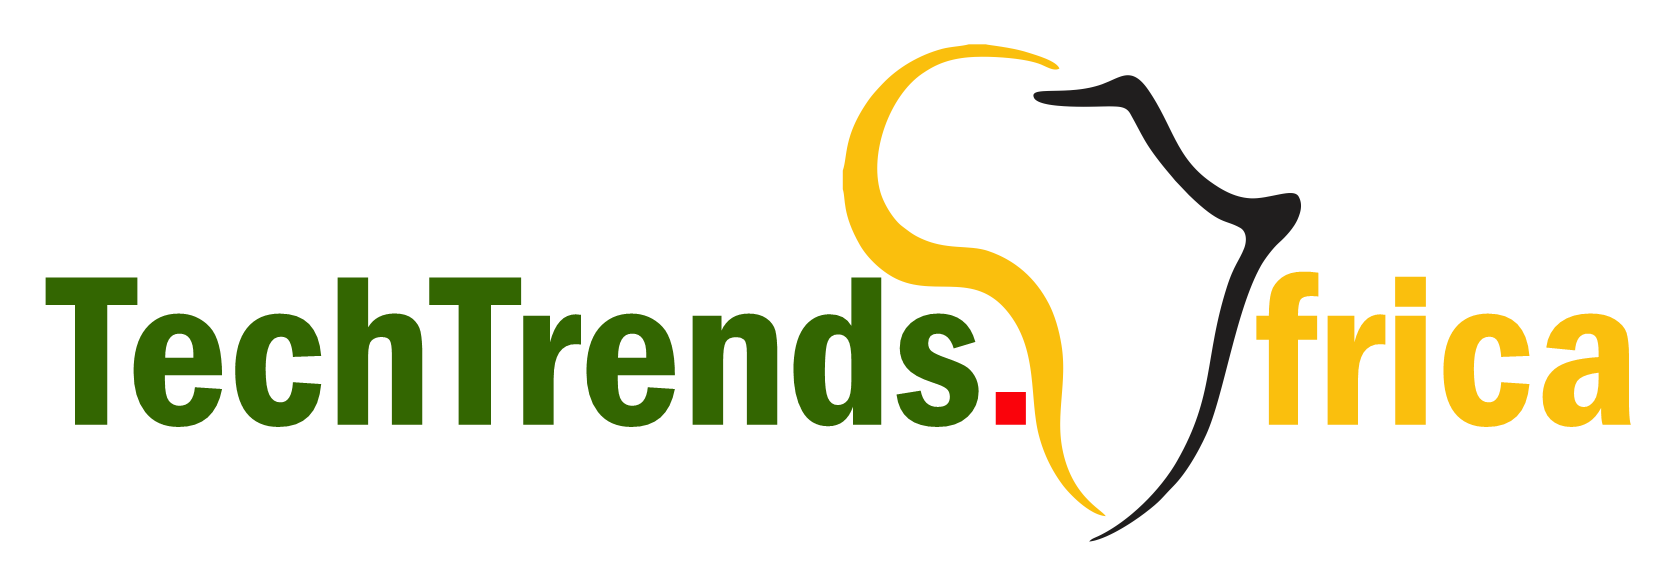 TechTrends.Africa-Logo